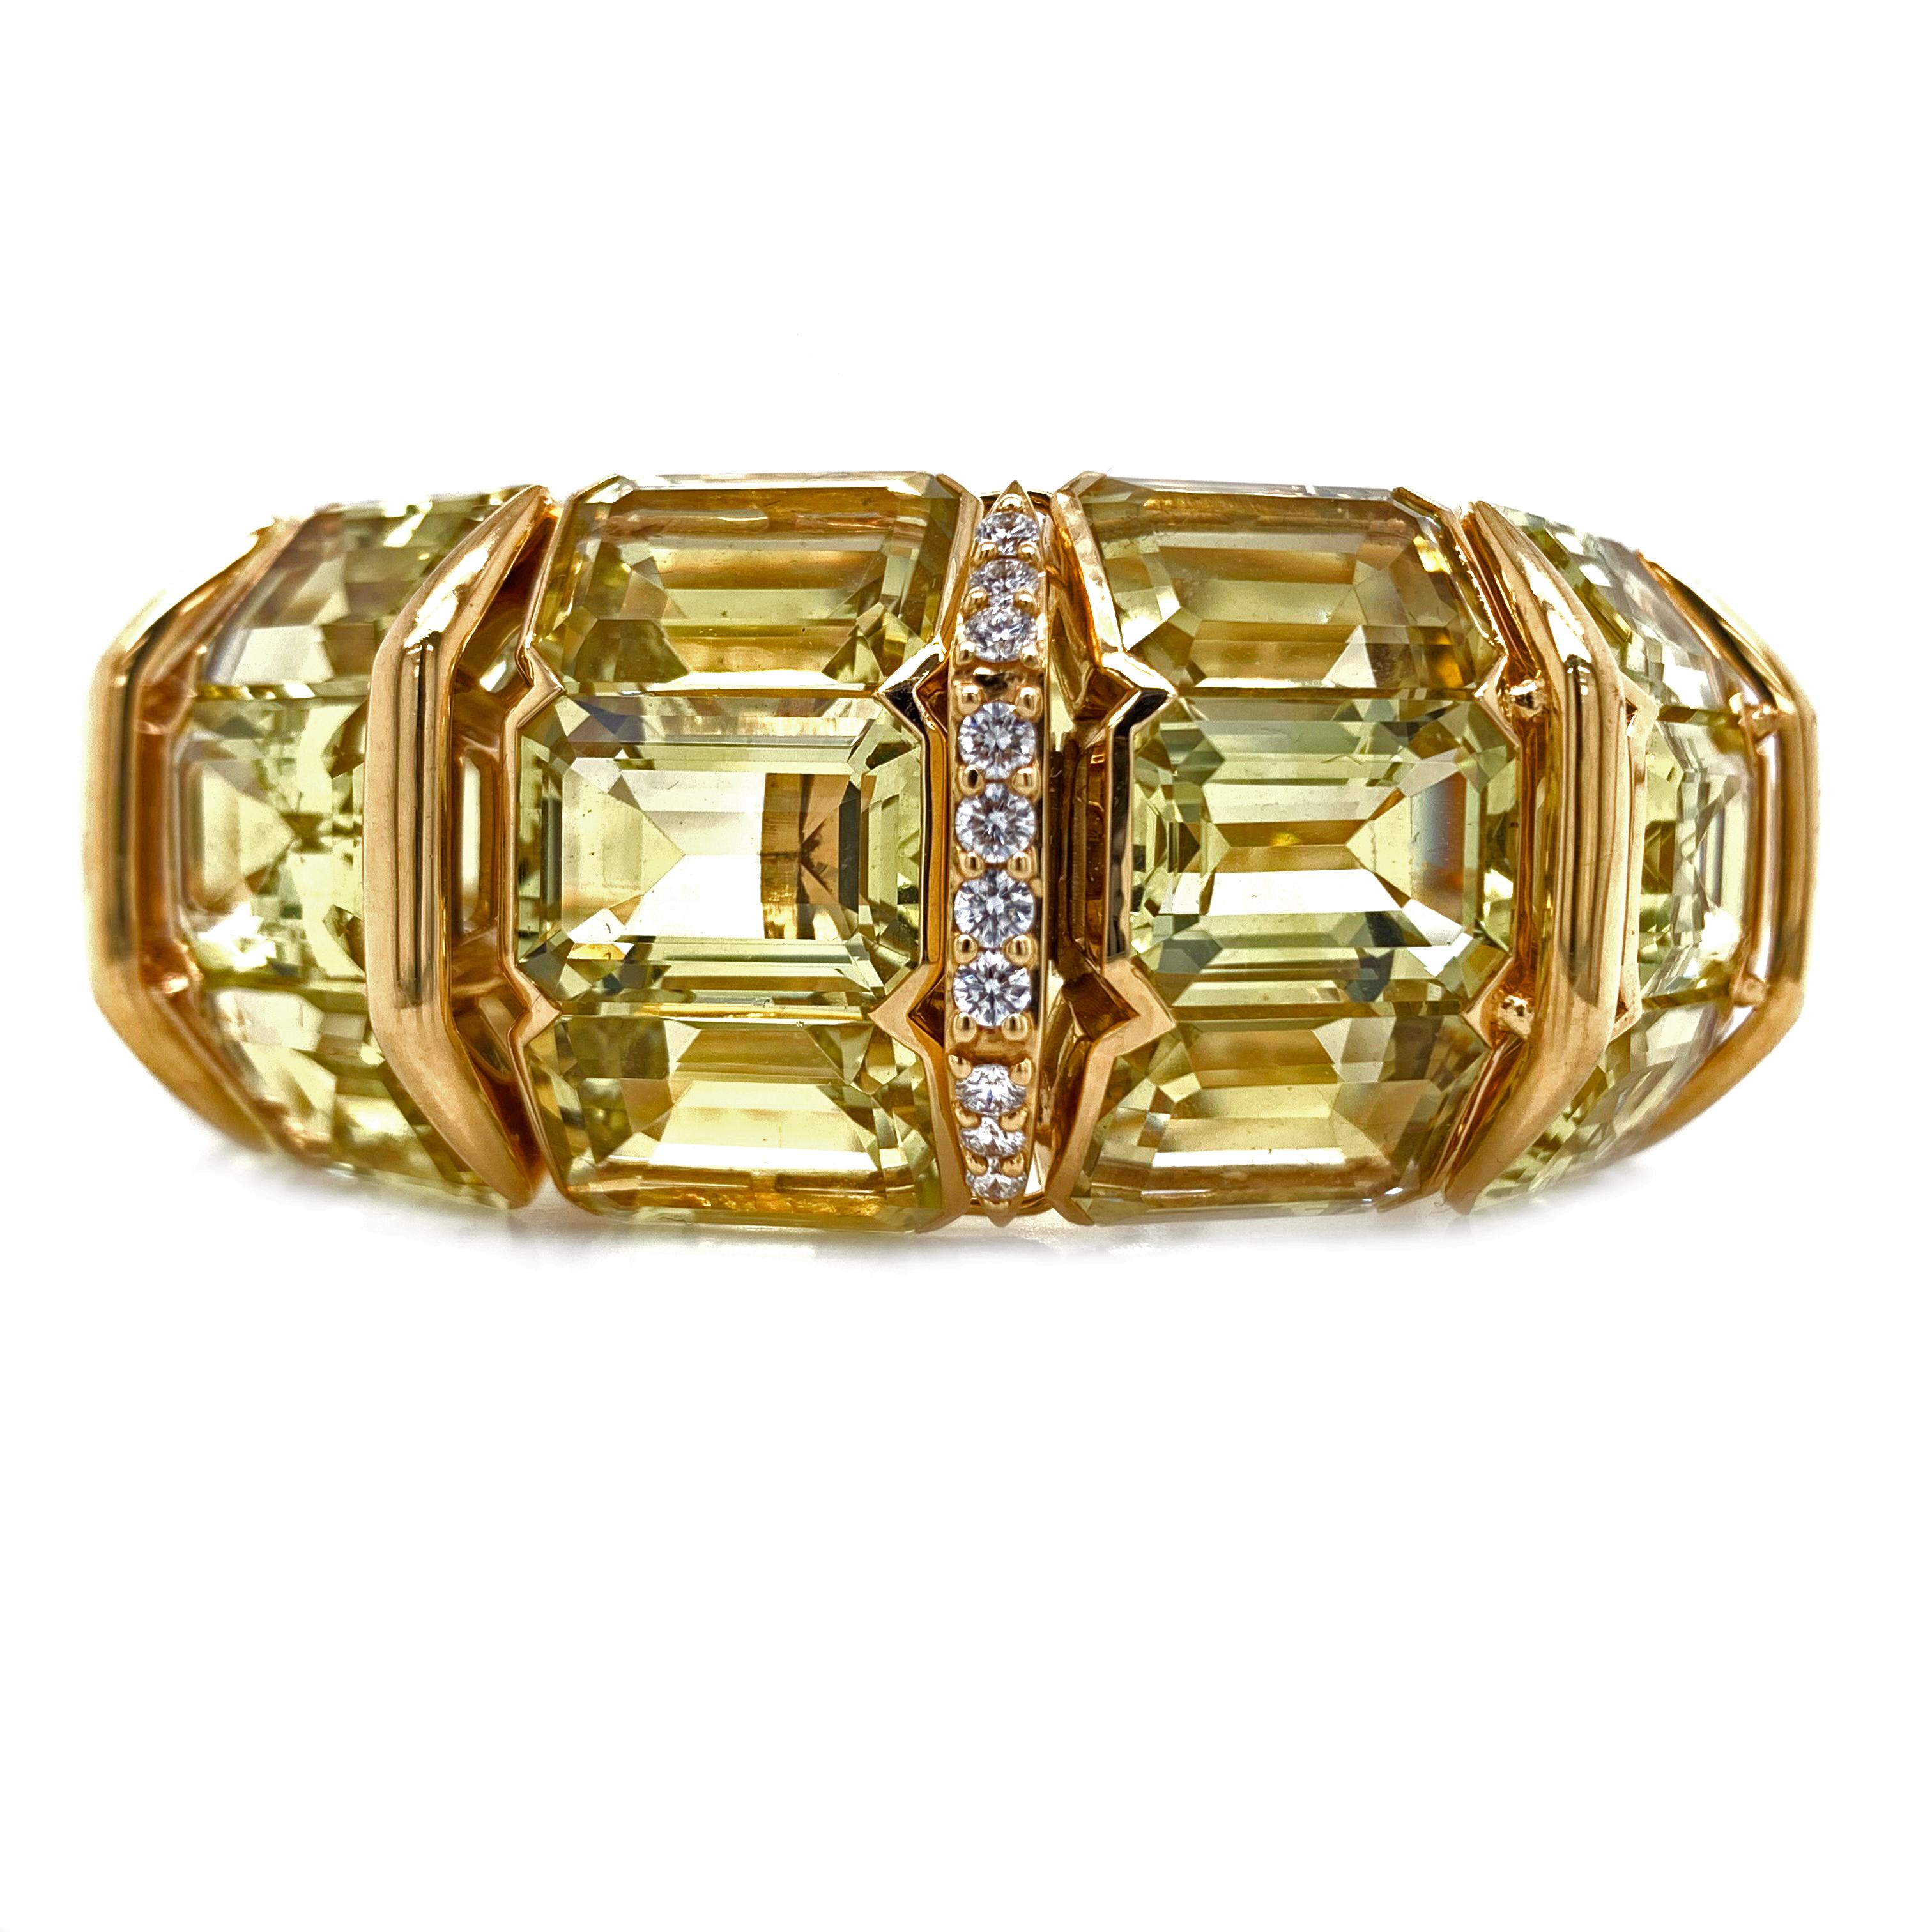 Ein schöner Armreif aus 18k Gelbgold mit Zitronenquarz und Diamant.  Dieses schöne Armband aus 18k Gelbgold mit 255,93cts Zitronenquarz hat einen Innendurchmesser von  6.5in und Außendurchmesser von 9,6in und wiegt 116,8 Gramm. Wunderschön